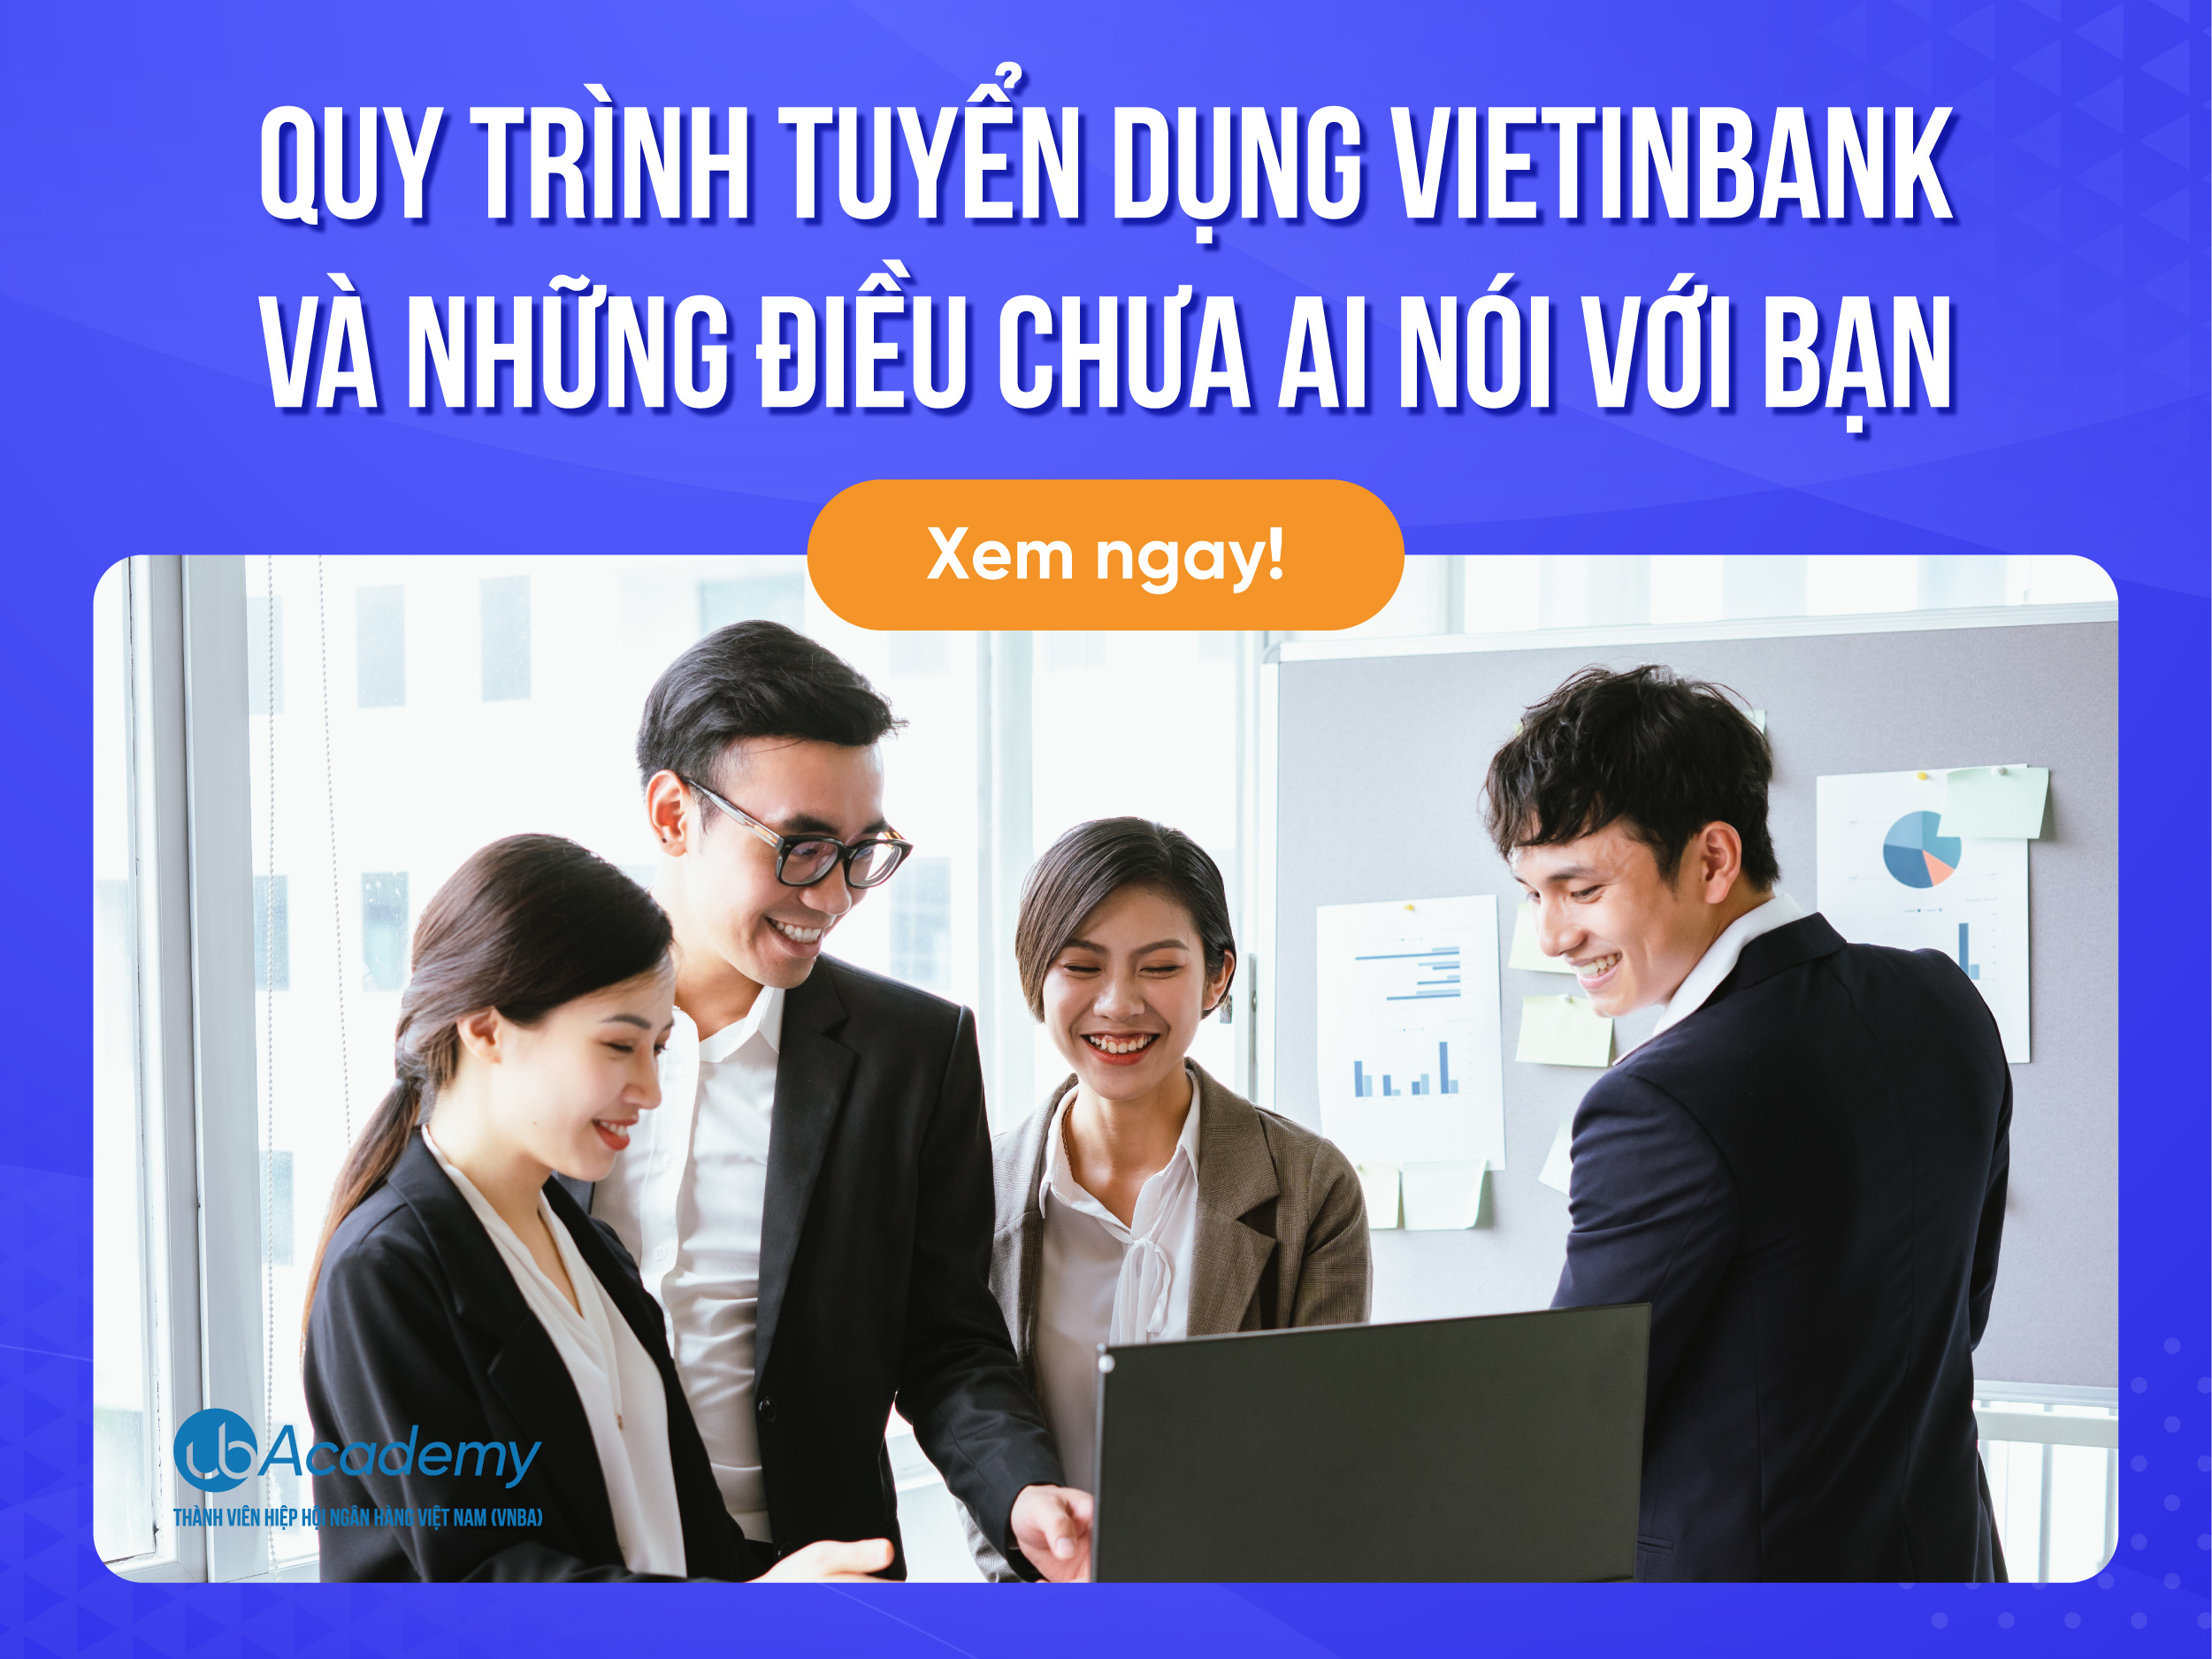 Quy trình tuyển dụng VietinBank